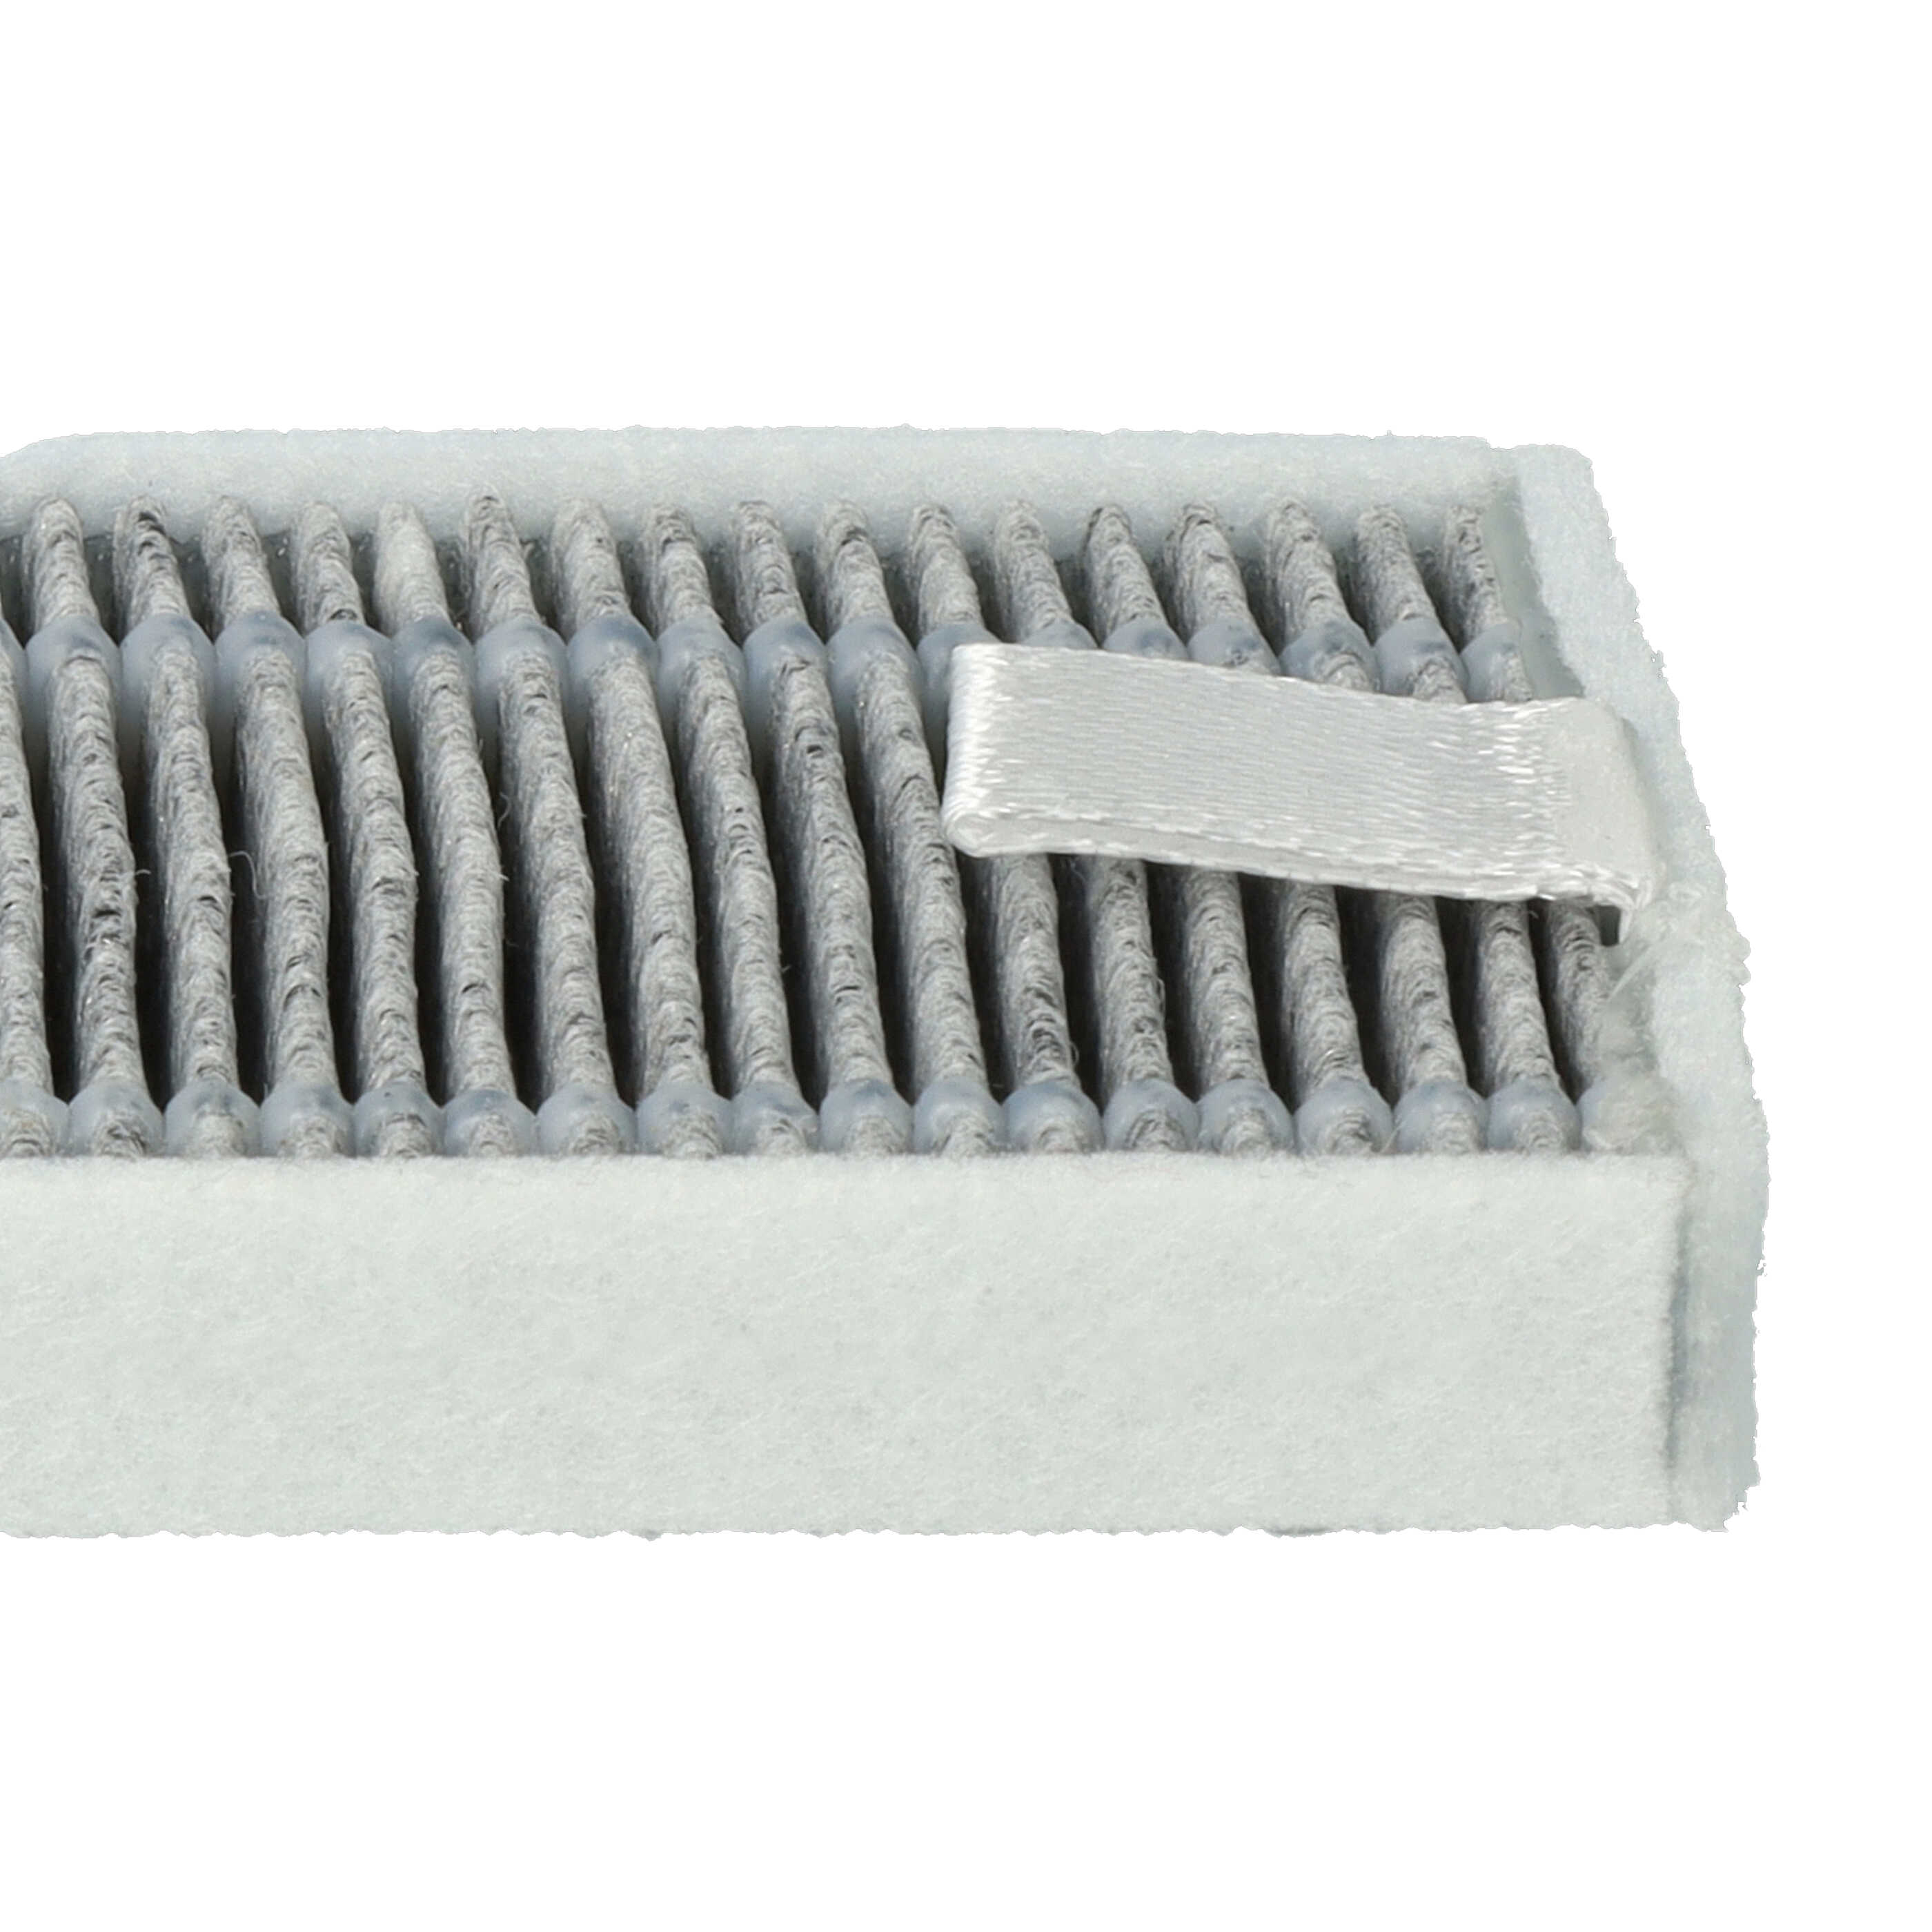 2x Filtres à charbon actif pour robot aspirateur Proscenic, Cecotec, Xiaomi M7 u.a. - 13 x 4 x 1 cm